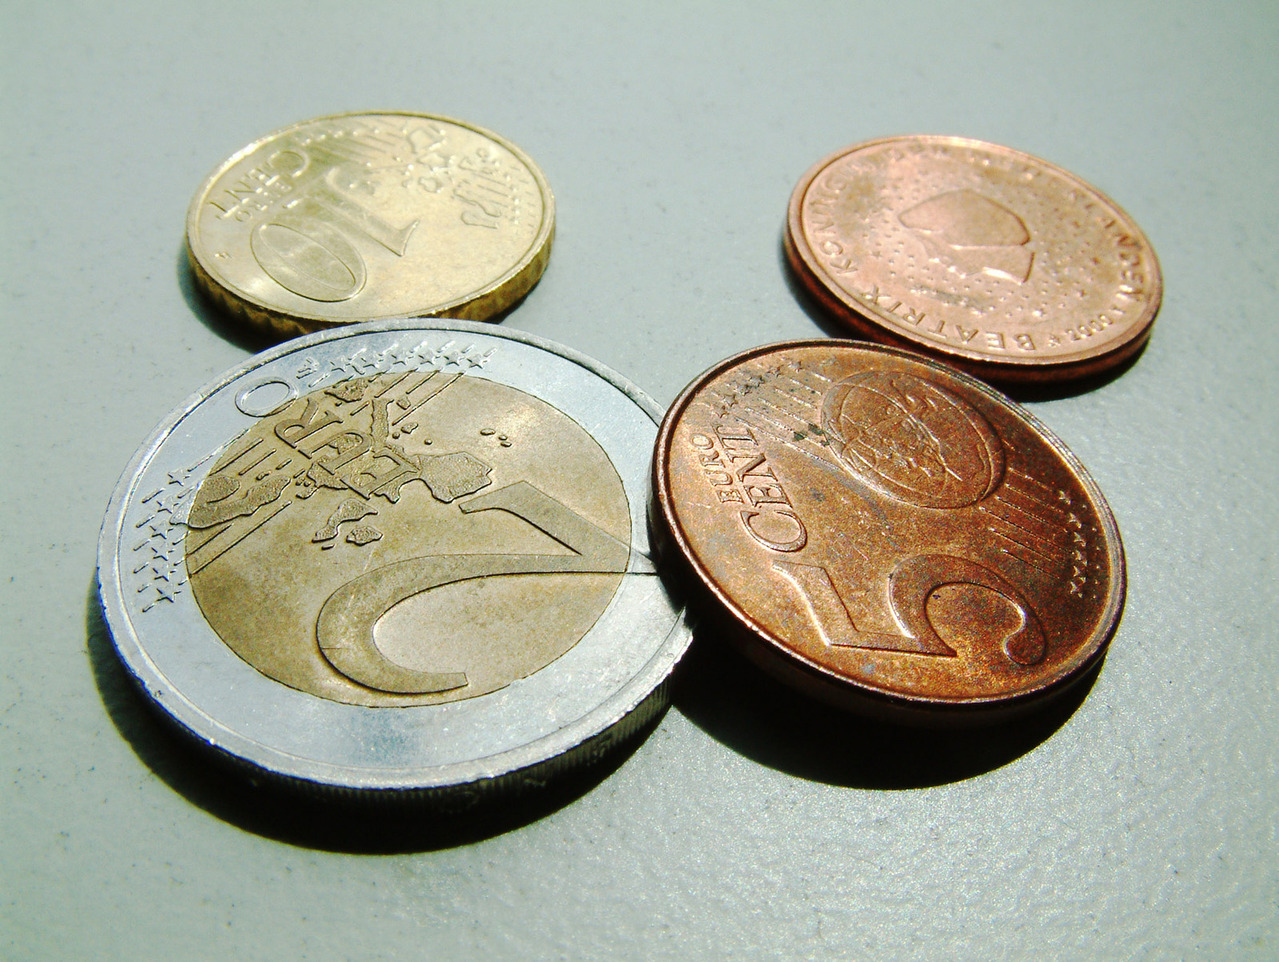 Monedas euro